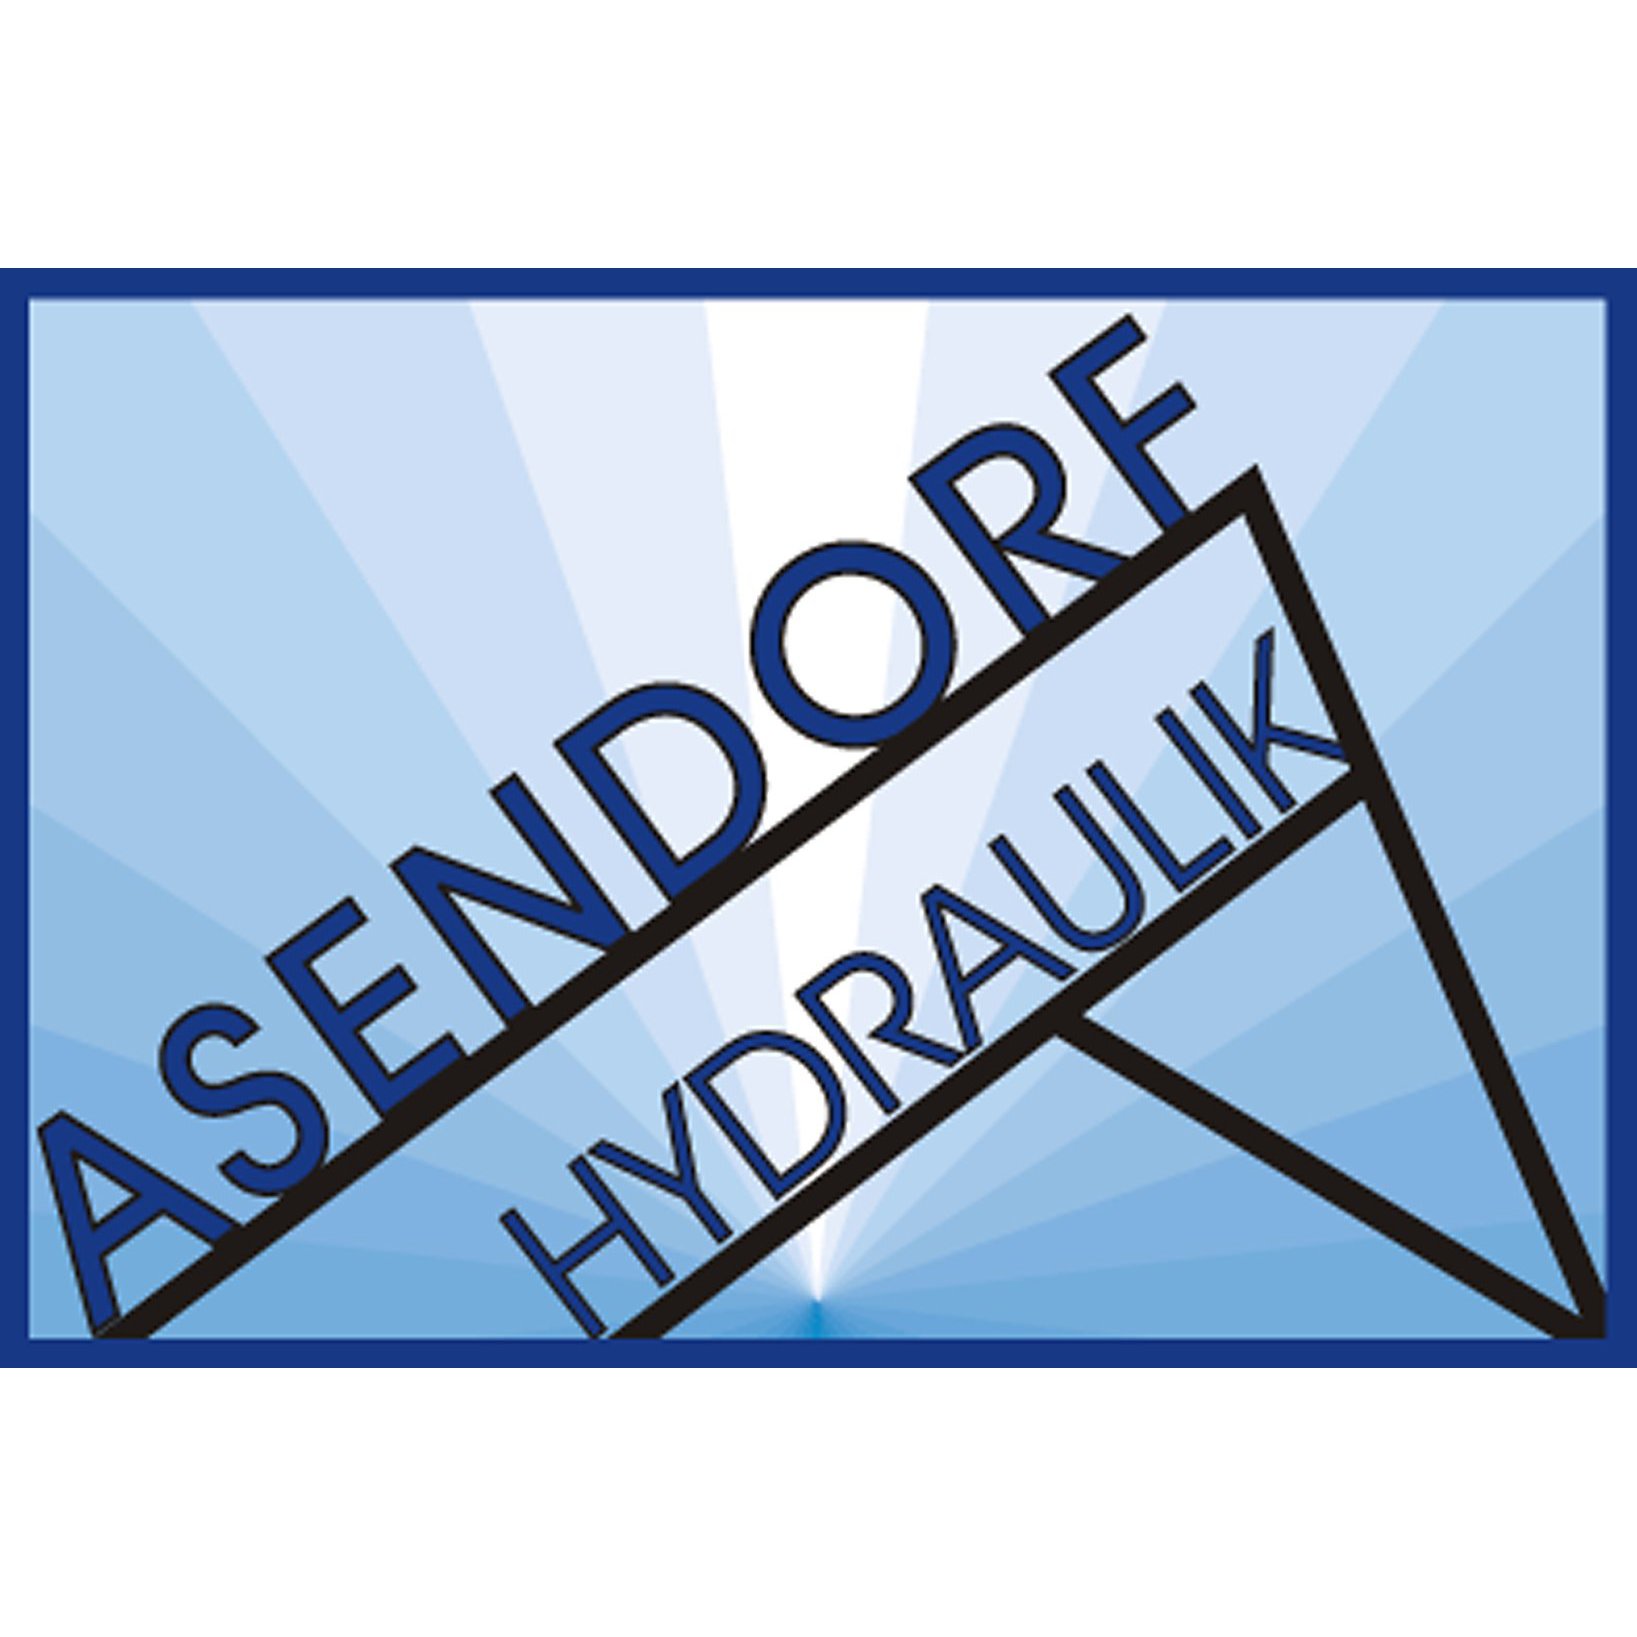 Asendorf Hydraulik GmbH